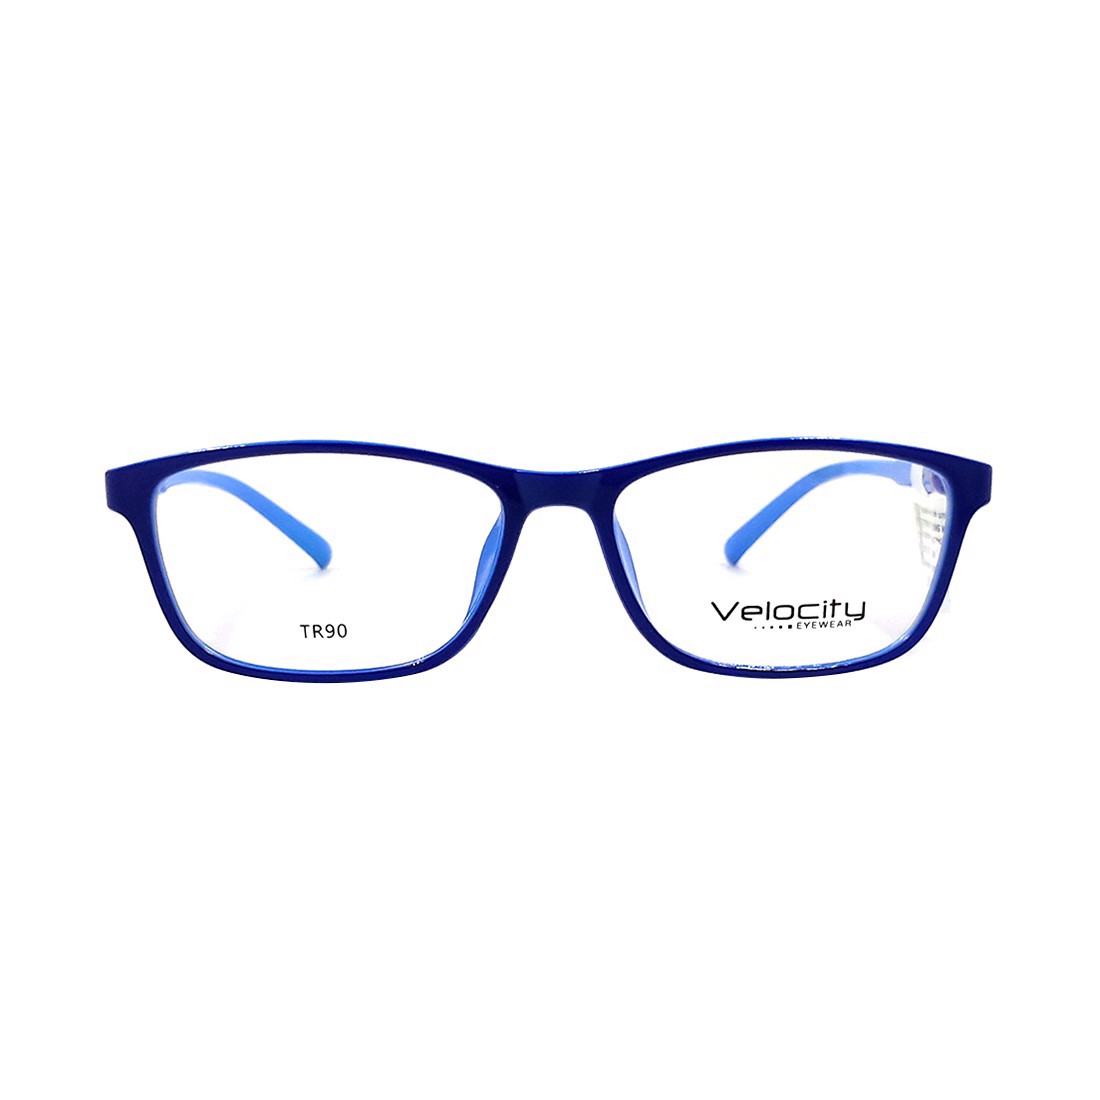 Gọng kính, mắt kính chính hãng VELOCITY VL36459 162 - Tặng 1 ví cầm tay (màu ngẫu nhiên)